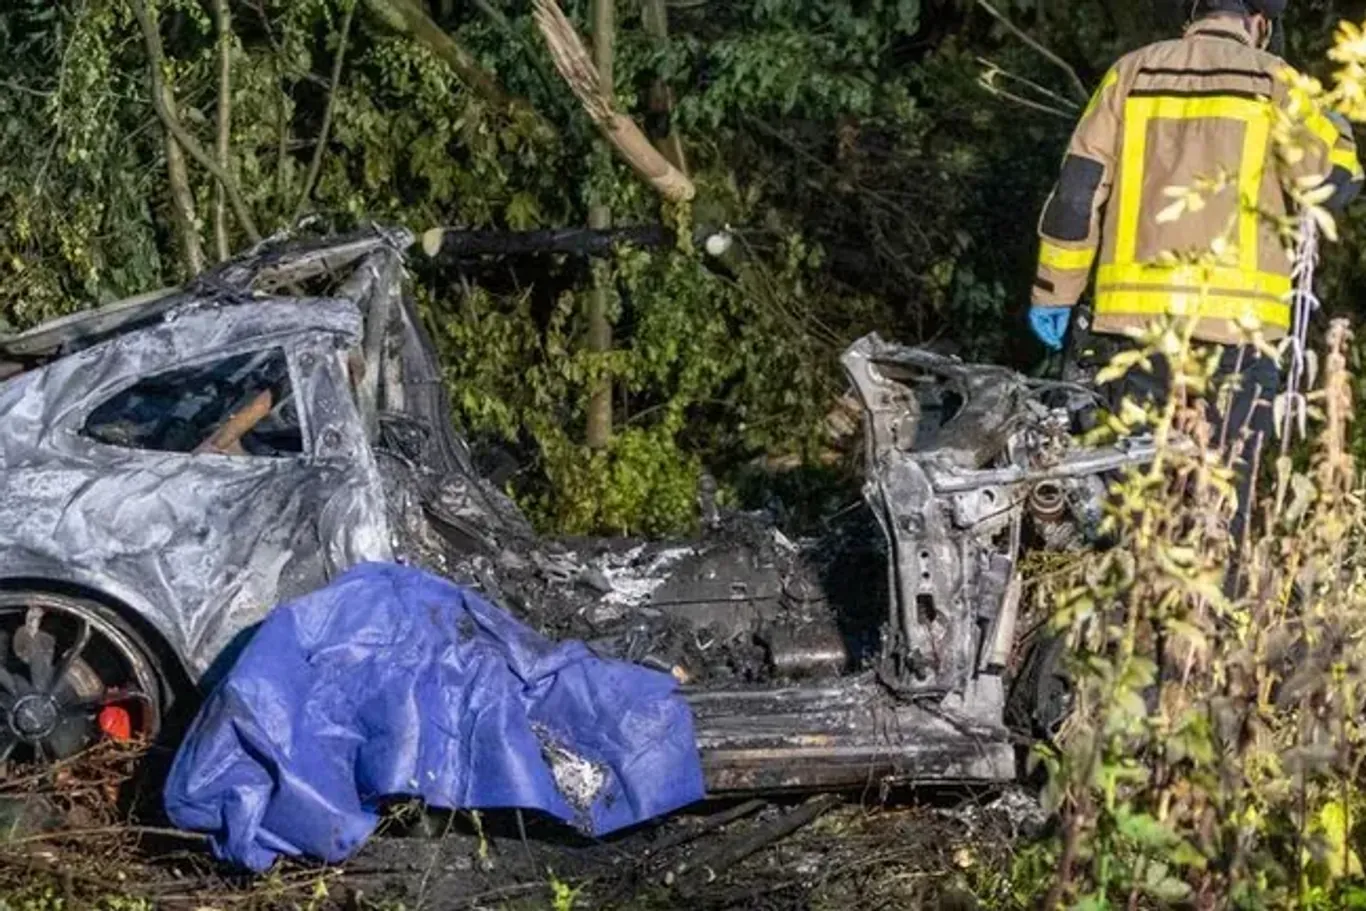 Der ausgebrannte Sportwagen: Zwei Insassen des Wagens sind bei dem Unfall ums Leben gekommen. (Quelle: Justin Brosch)